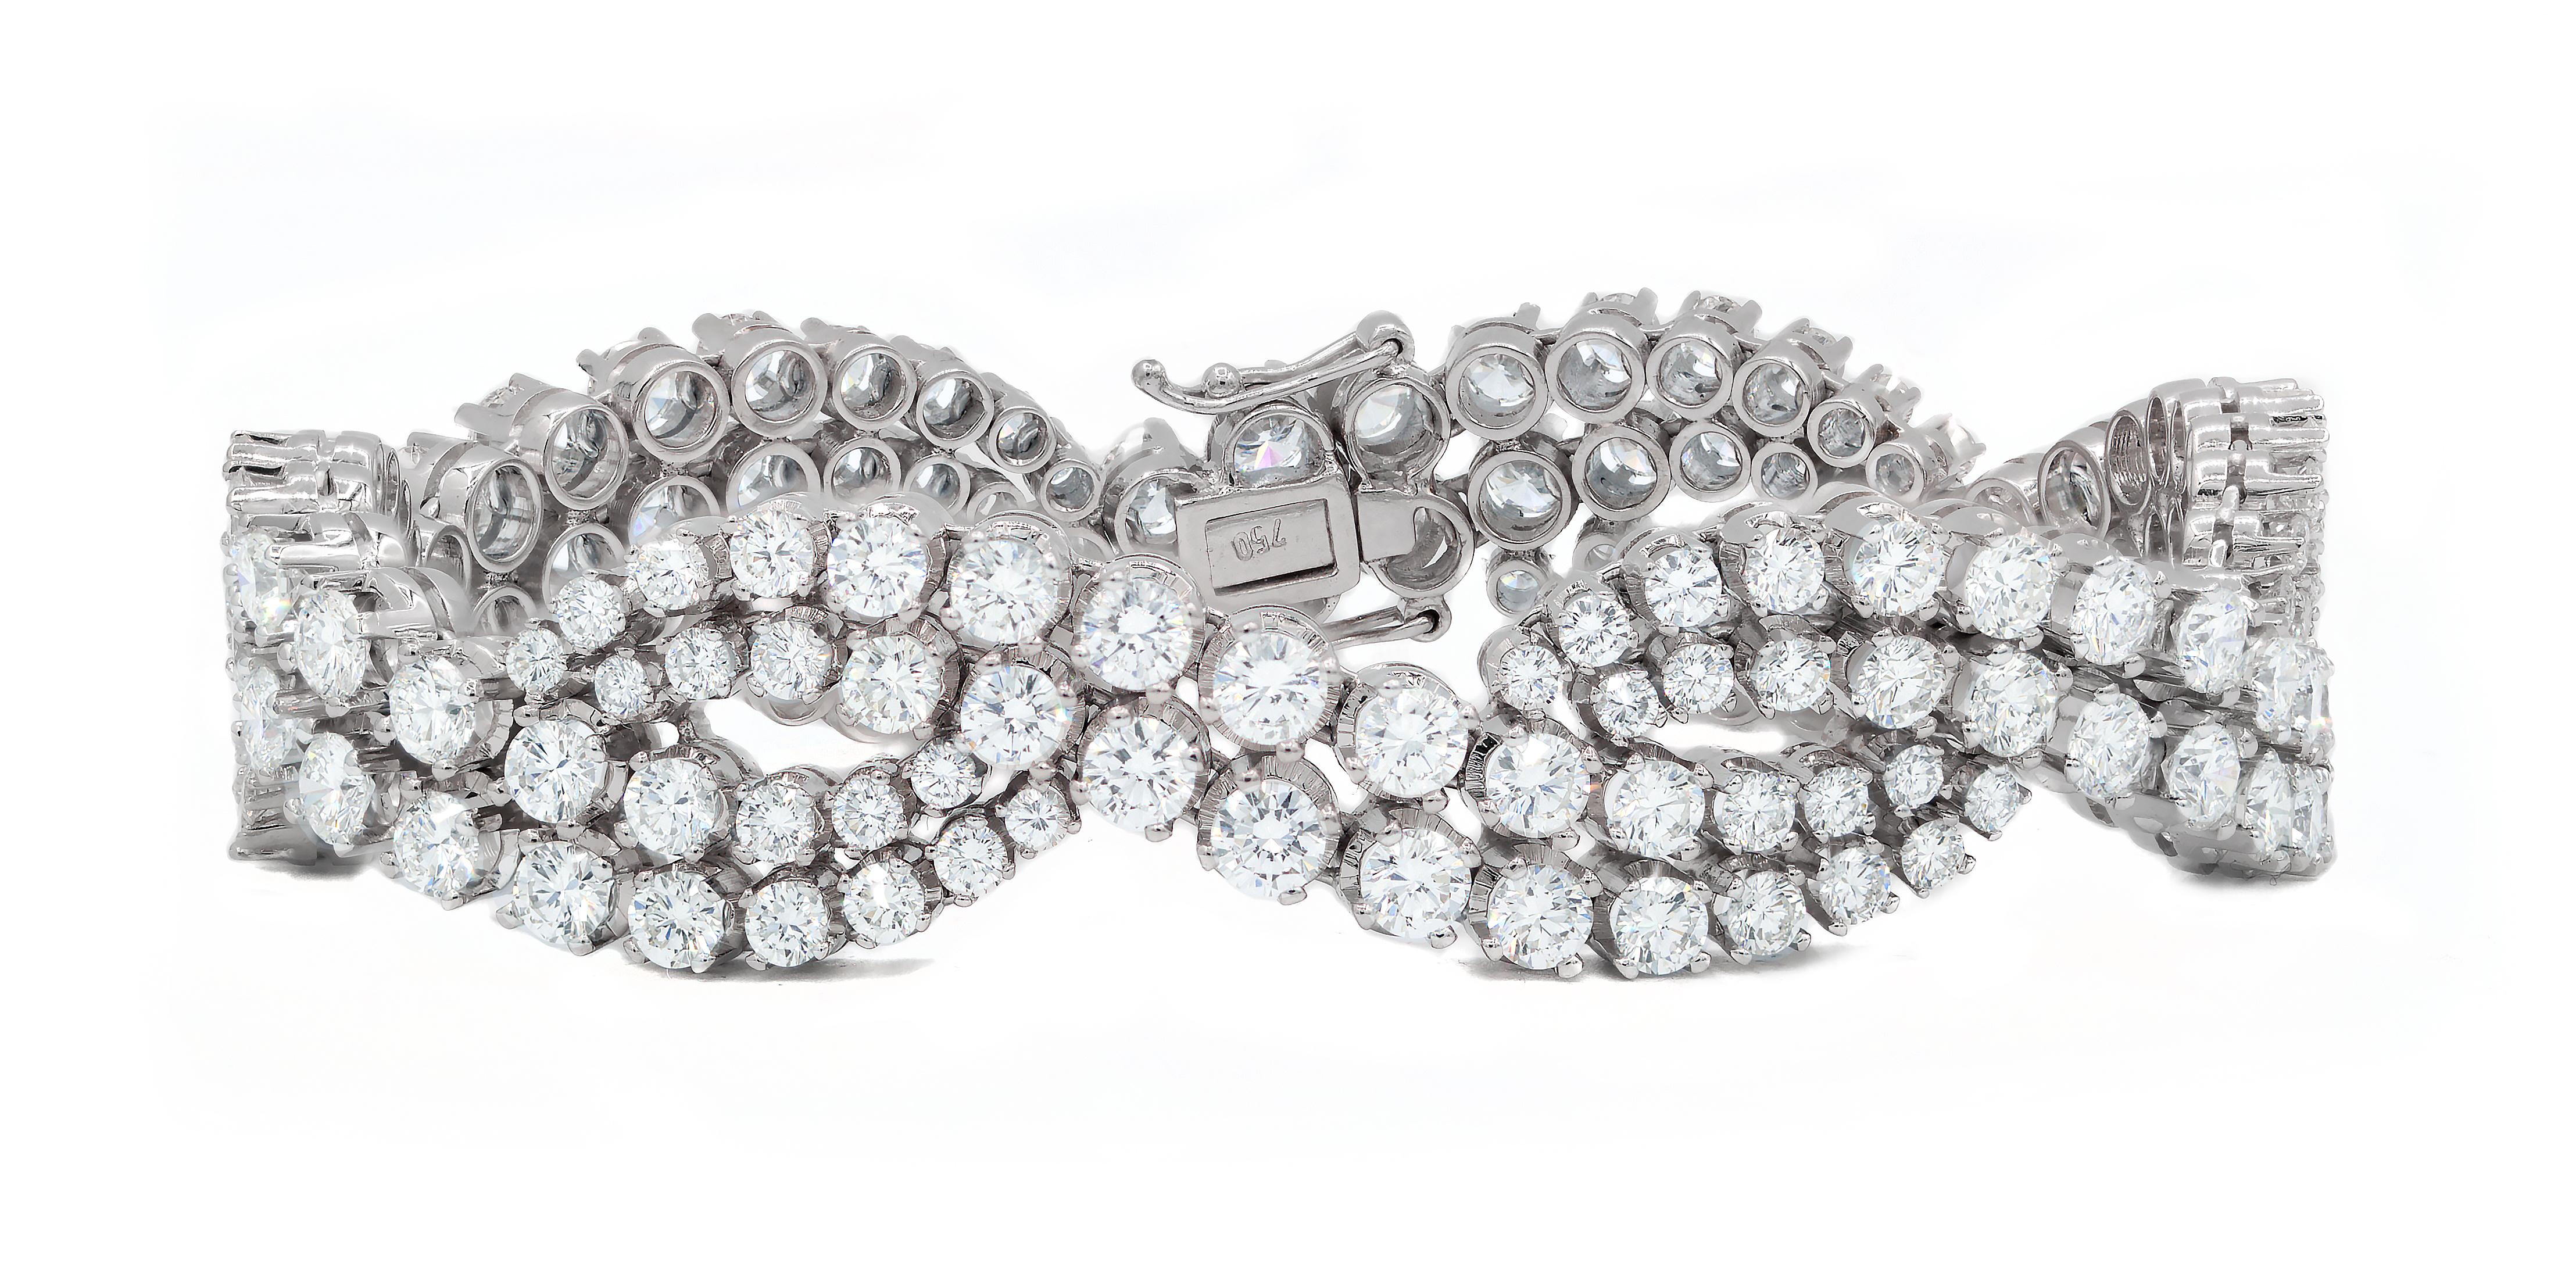 Bracelet infini en or blanc 18kt avec 18.06 cts tw de diamants ronds (GH-Color VS1/VS2-Clarity ; IGI CERTIFED #4205118881)
A&M est un fournisseur de premier plan de bijoux fins de qualité supérieure depuis plus de 35 ans.
Diana M-One est un magasin